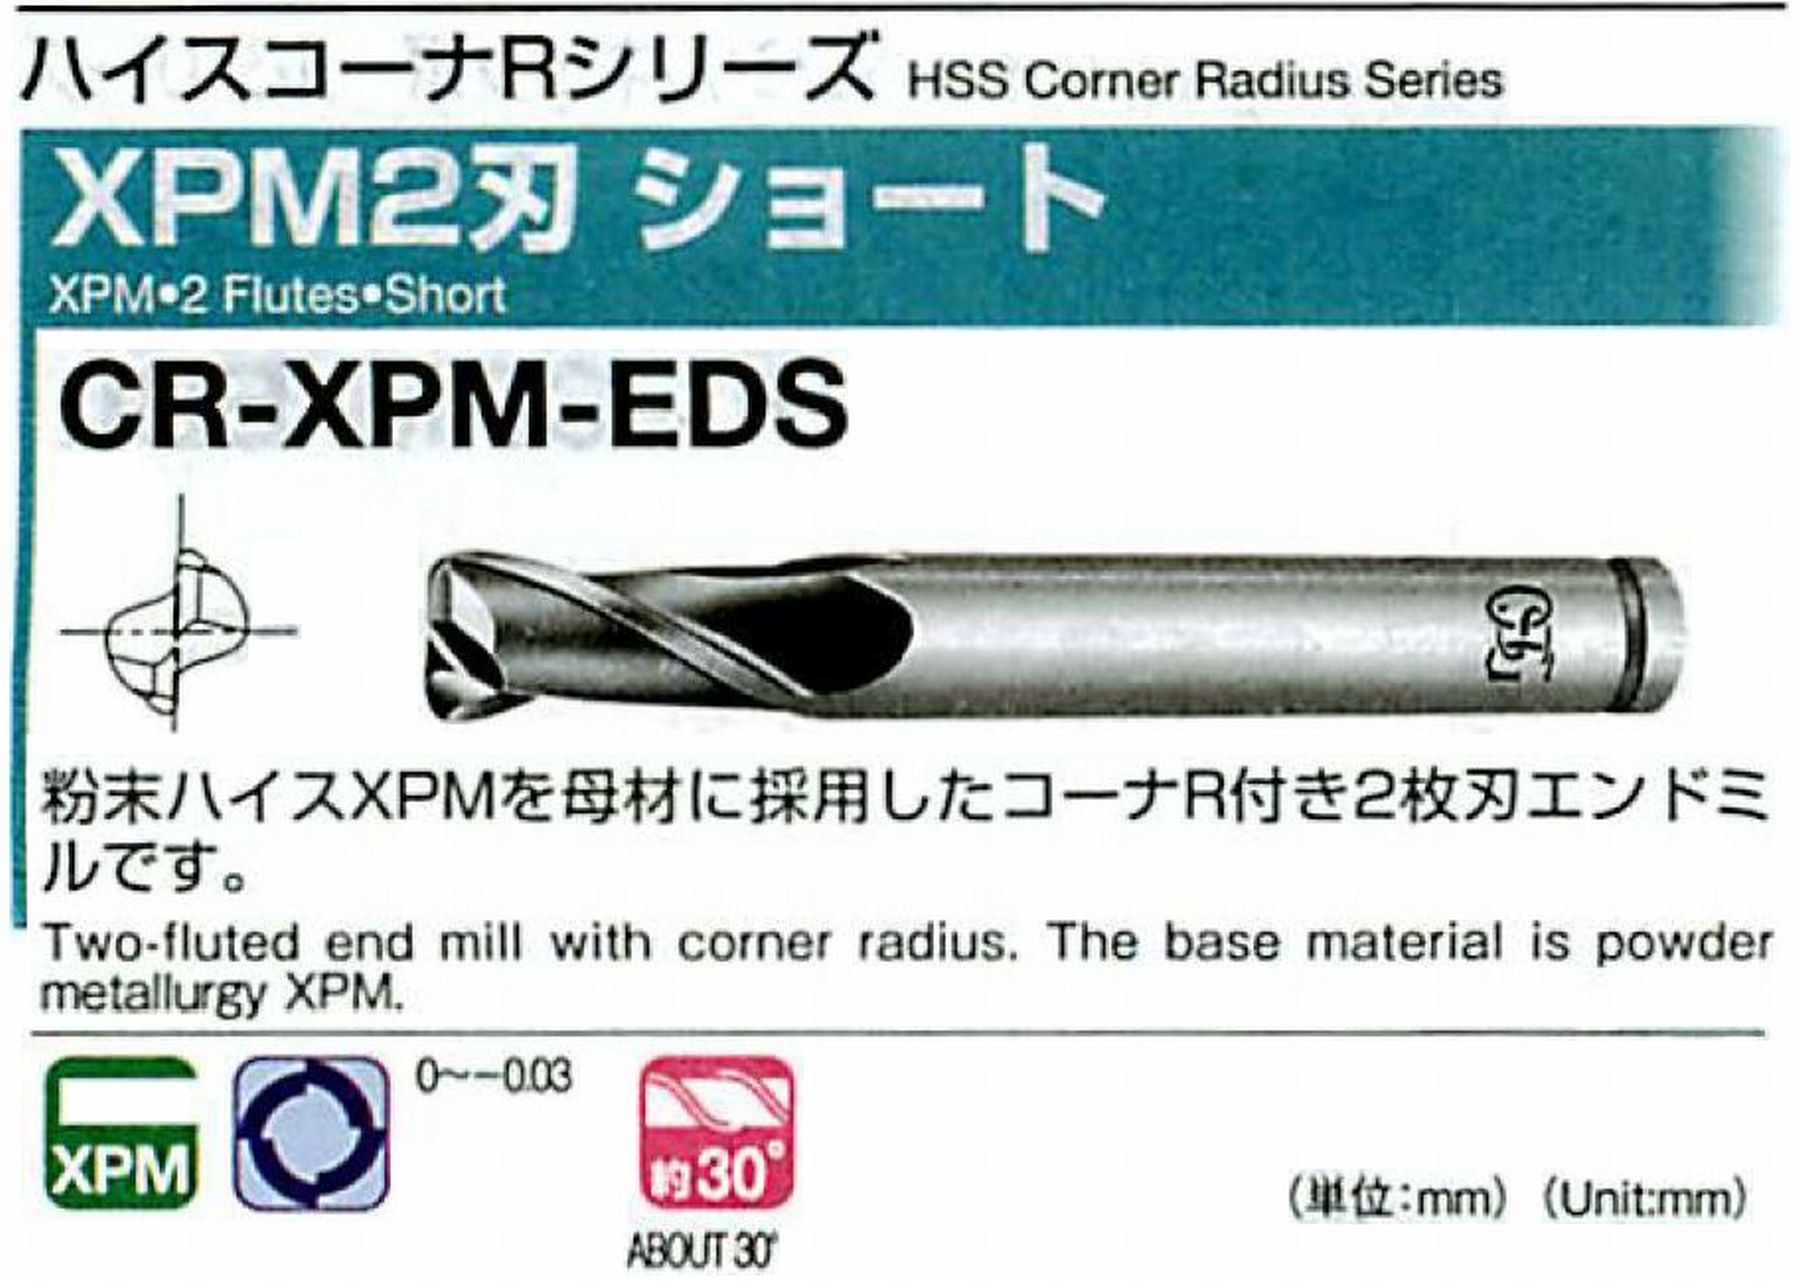 XPM2刃 ショート CR-XPM-EDS(用途:被削材:炭素鋼、合金鋼、工具鋼、プリハードン鋼、焼き入れ鋼、ステンレス鋼、鋳鉄、ダクタイル